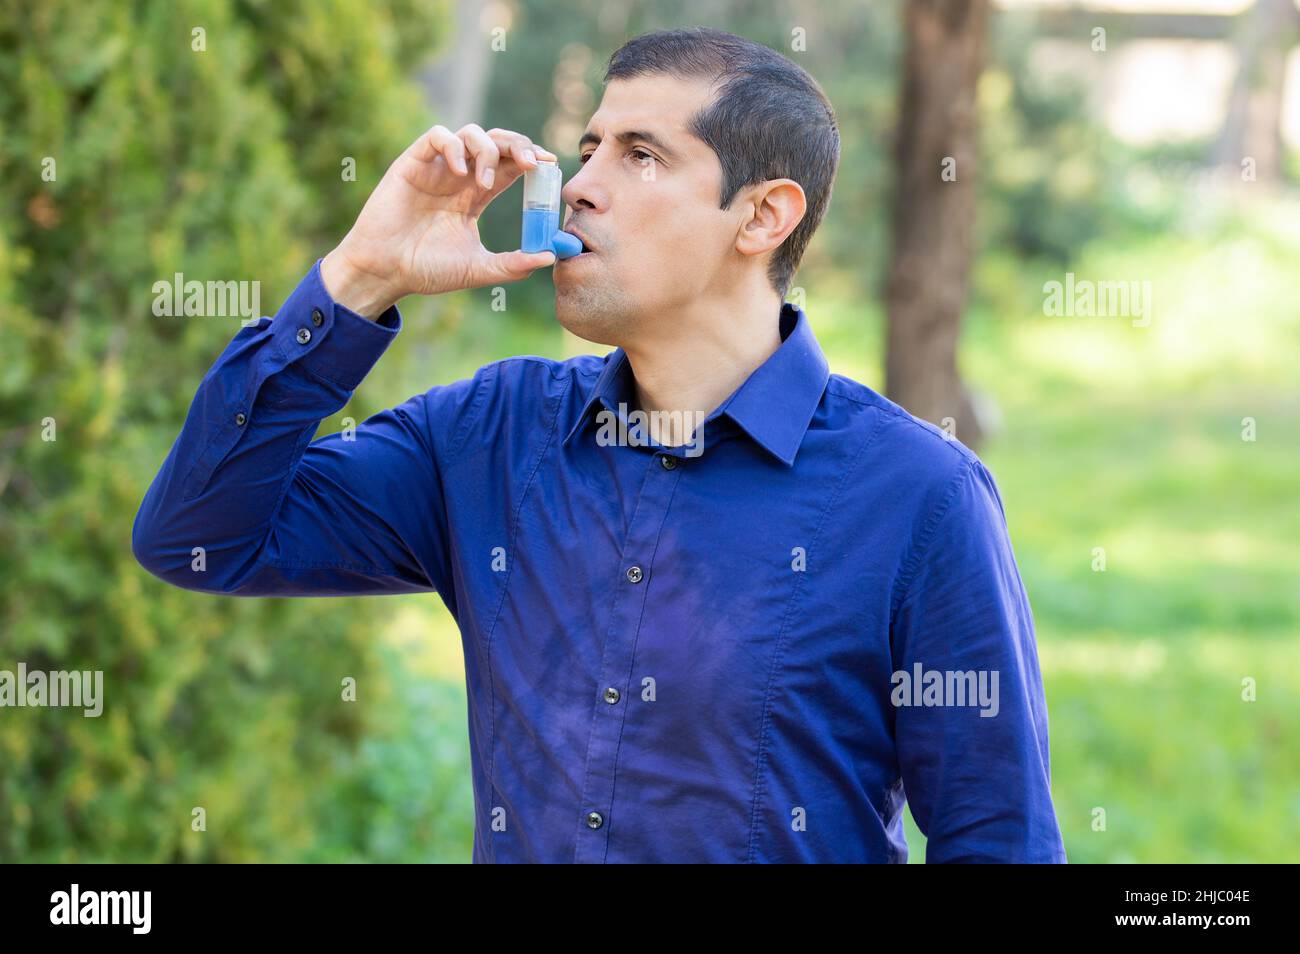 Der Mensch verwendet einen Asthmainhalator in einem Park Stockfoto